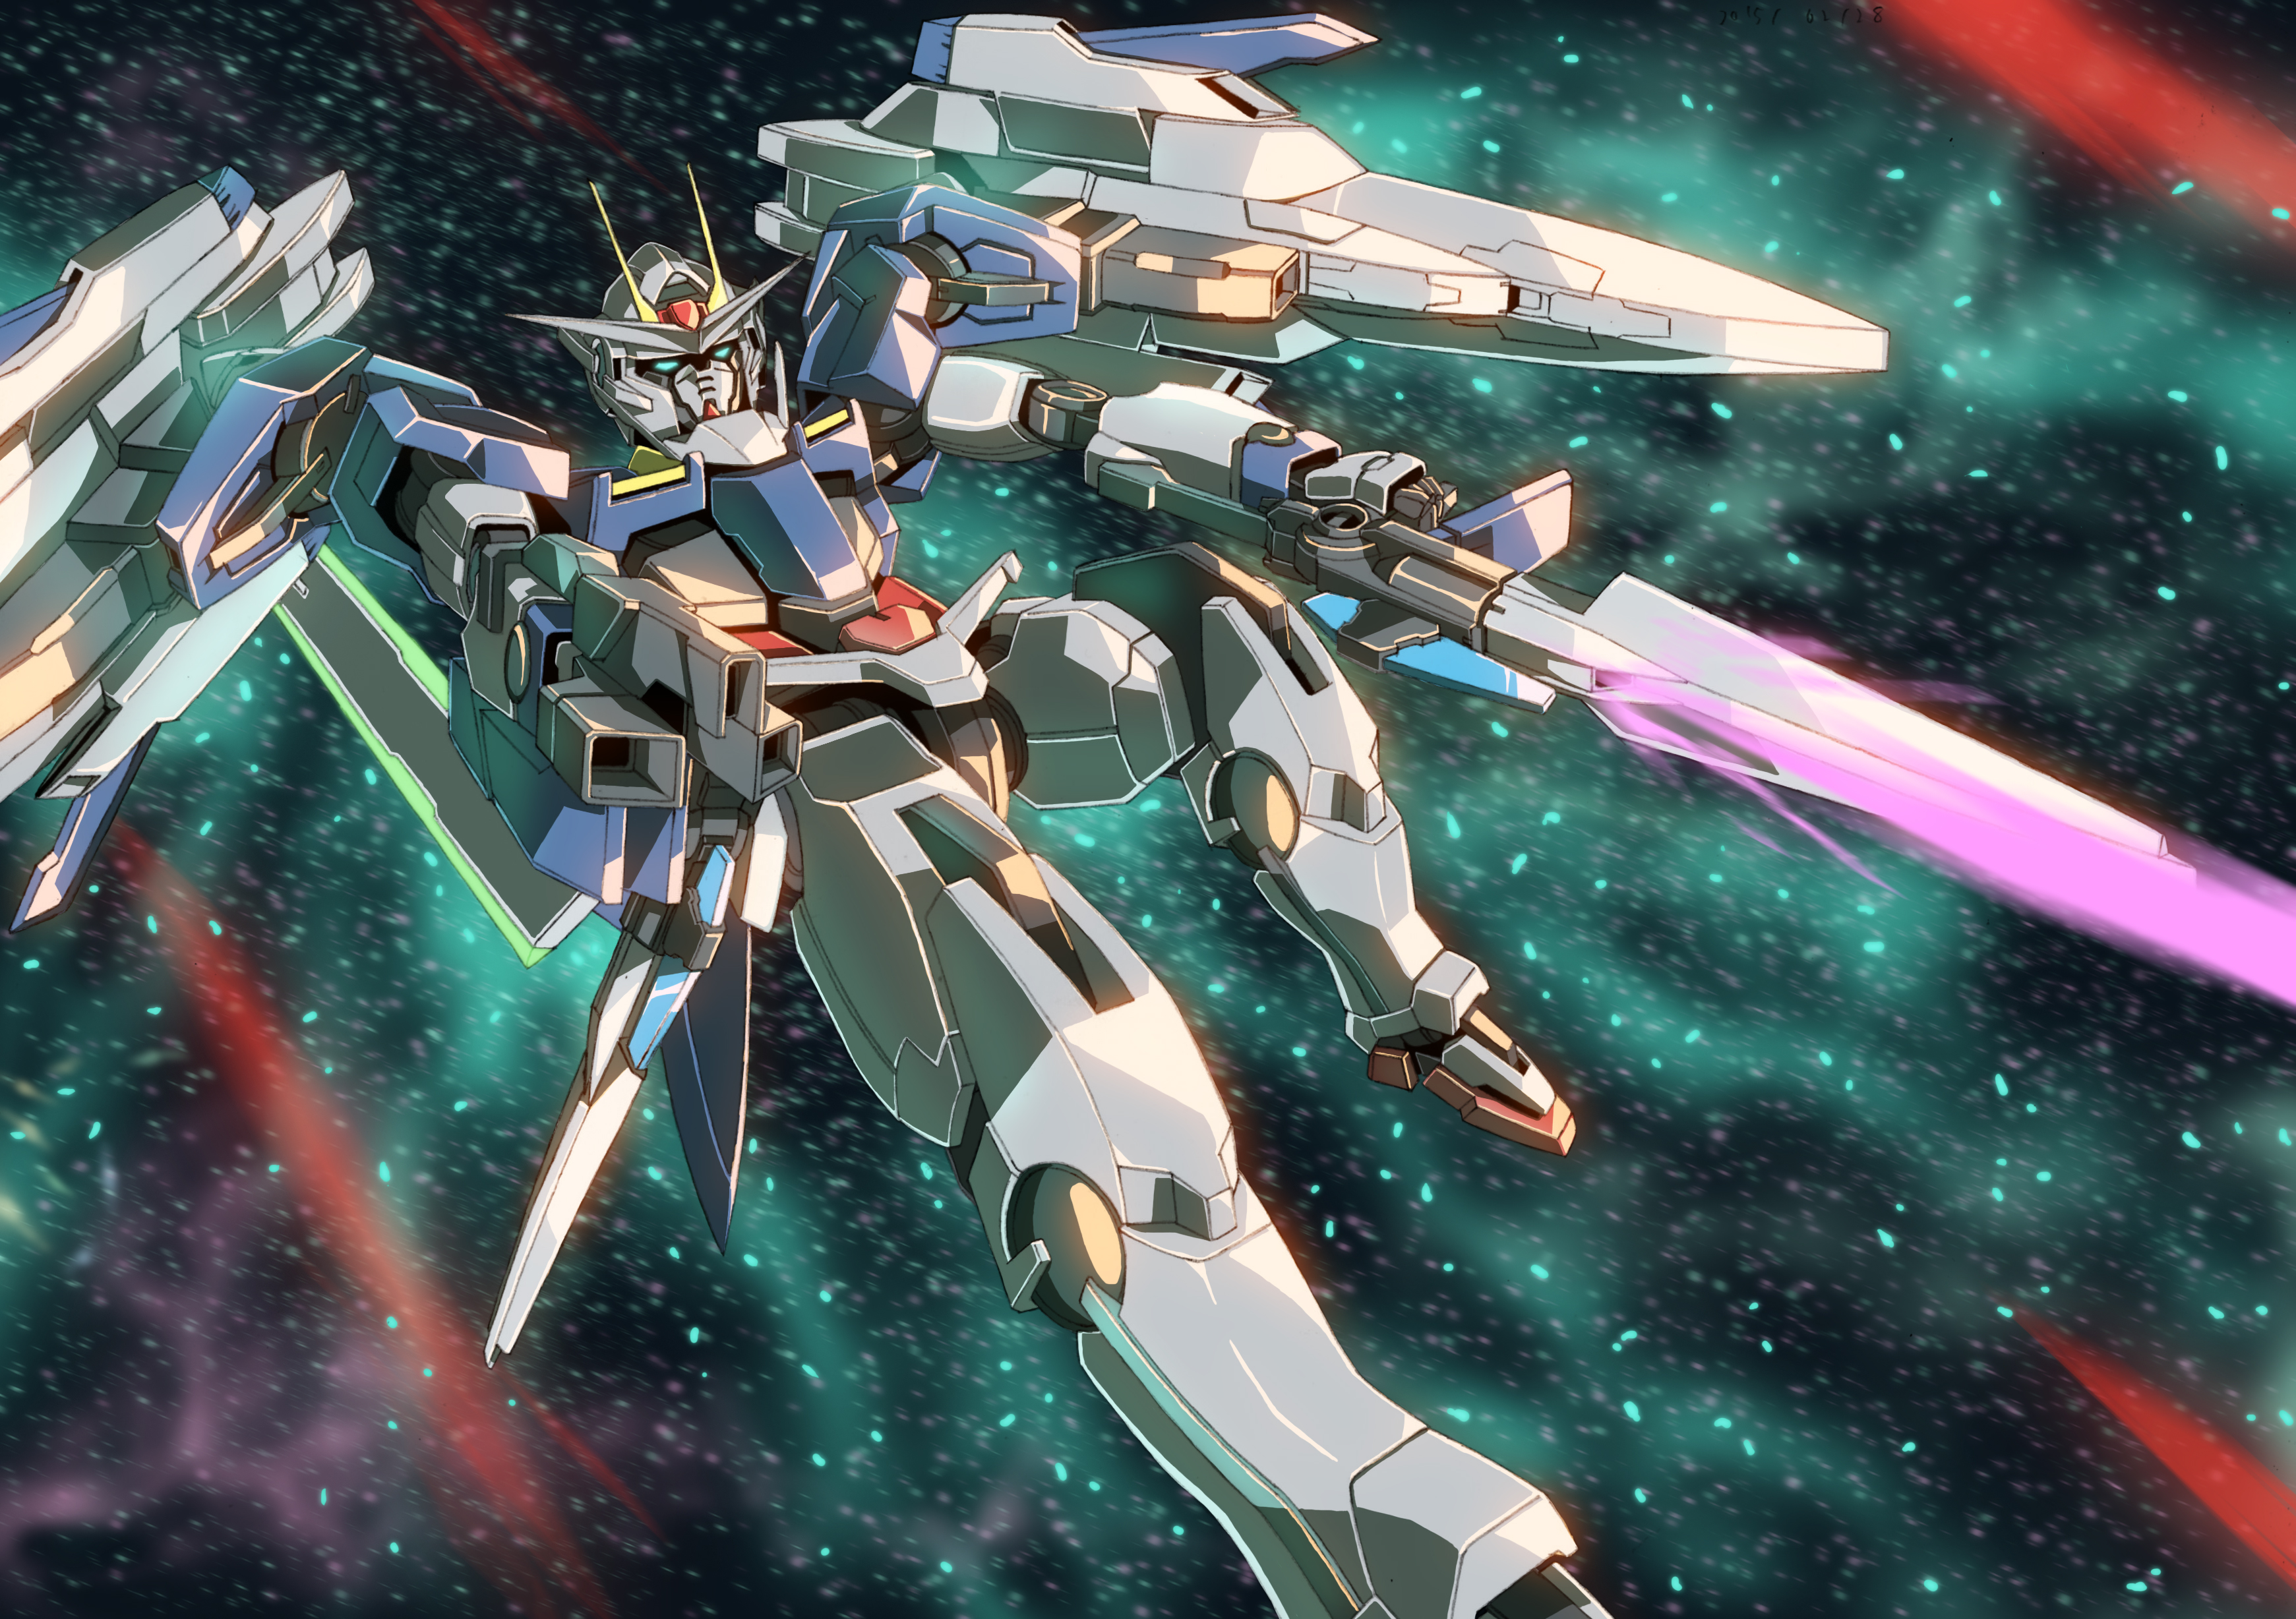 00 Raiser Mobile Suit Gundam 00 Super Robot Wars Gundam Mech Anime Artwork Digital Art Fan Art 3482x2456